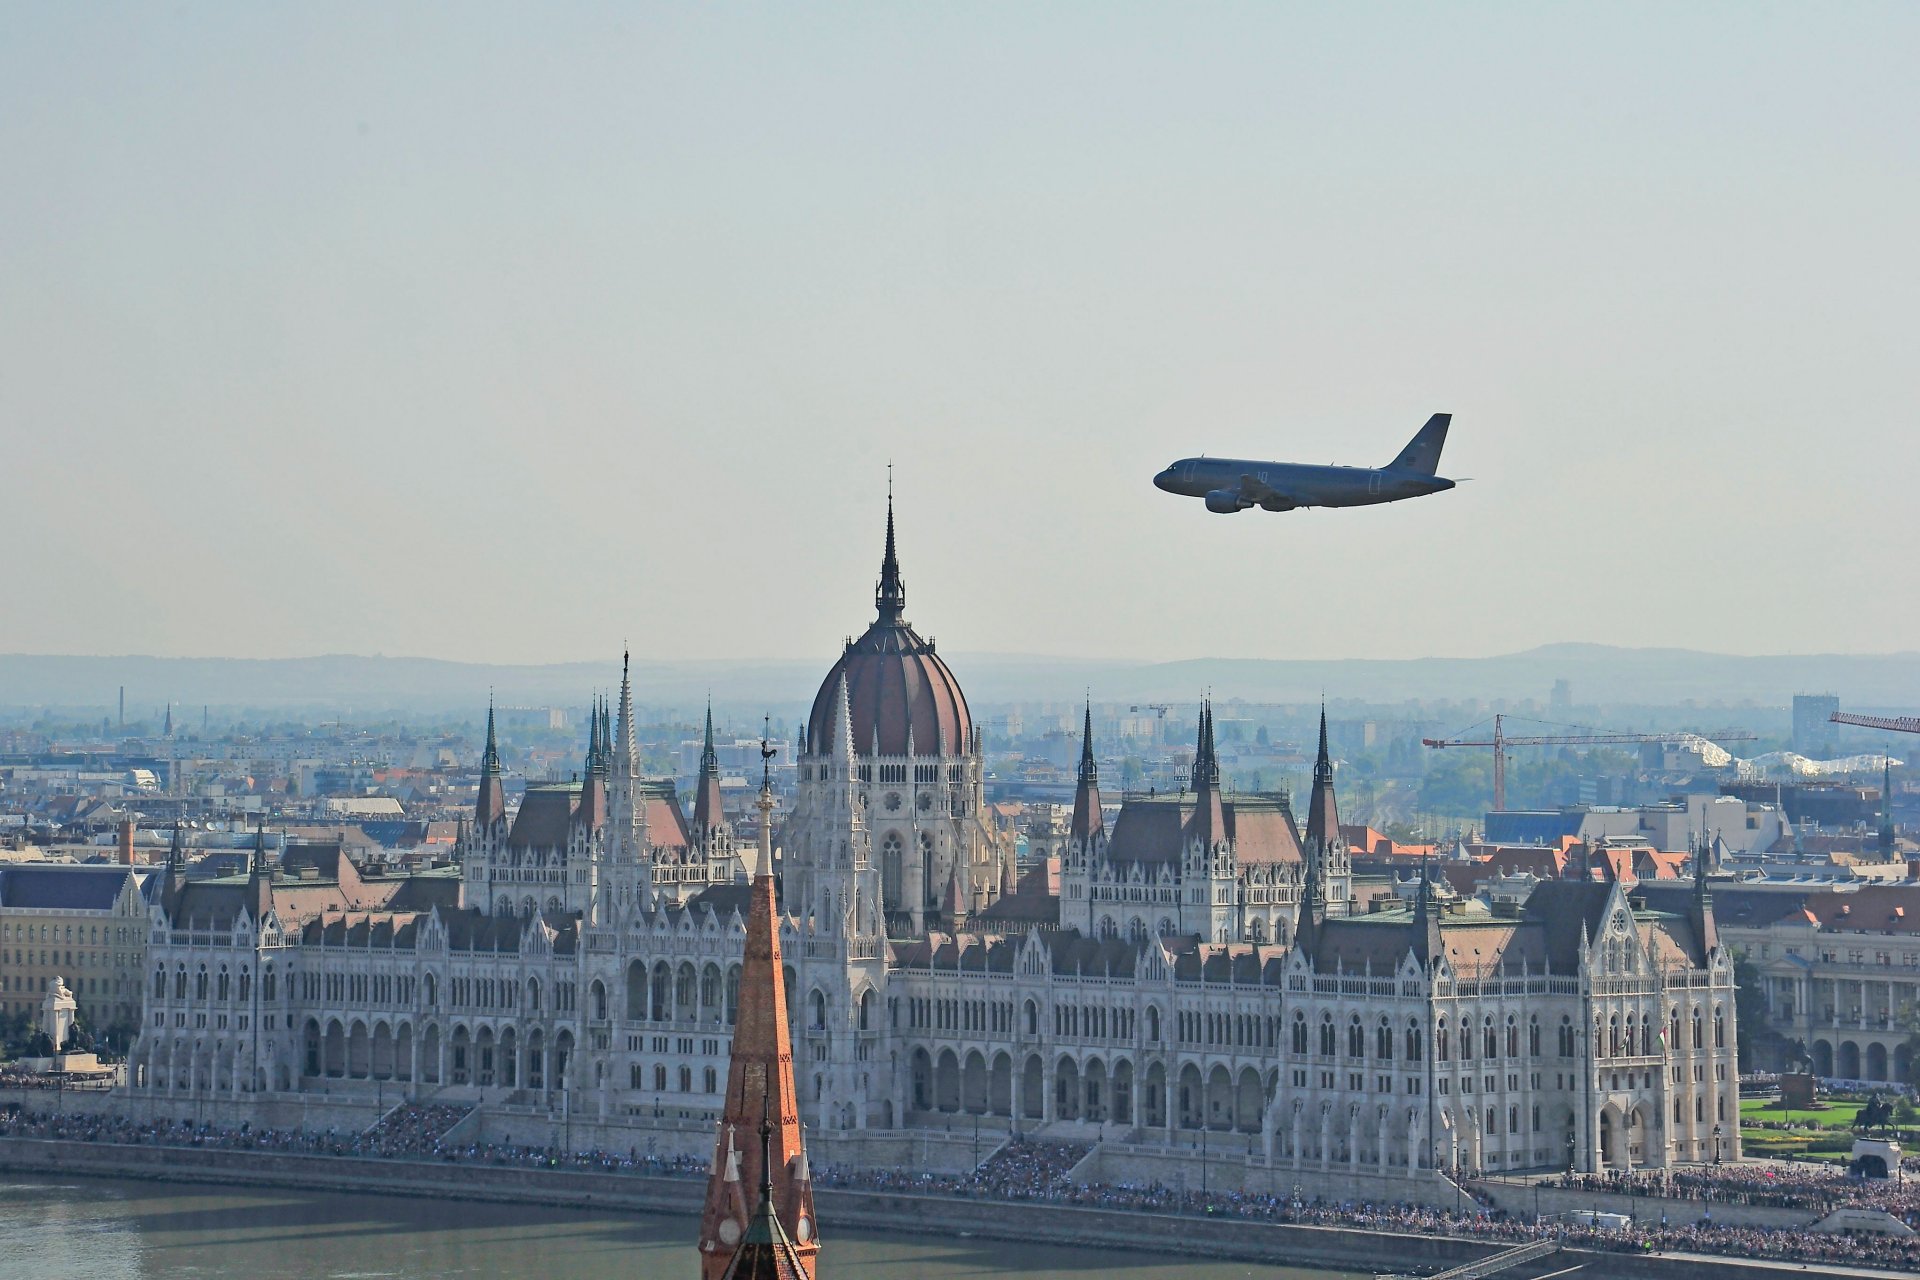 A Magyar Honvédség A319 szállító repülõgépének díszelgõ áthúzása a Duna felett az államalapítás ünnepe alkalmából rendezett légi parádén, a háttérben az Országház épülete 2023. augusztus 20-án.